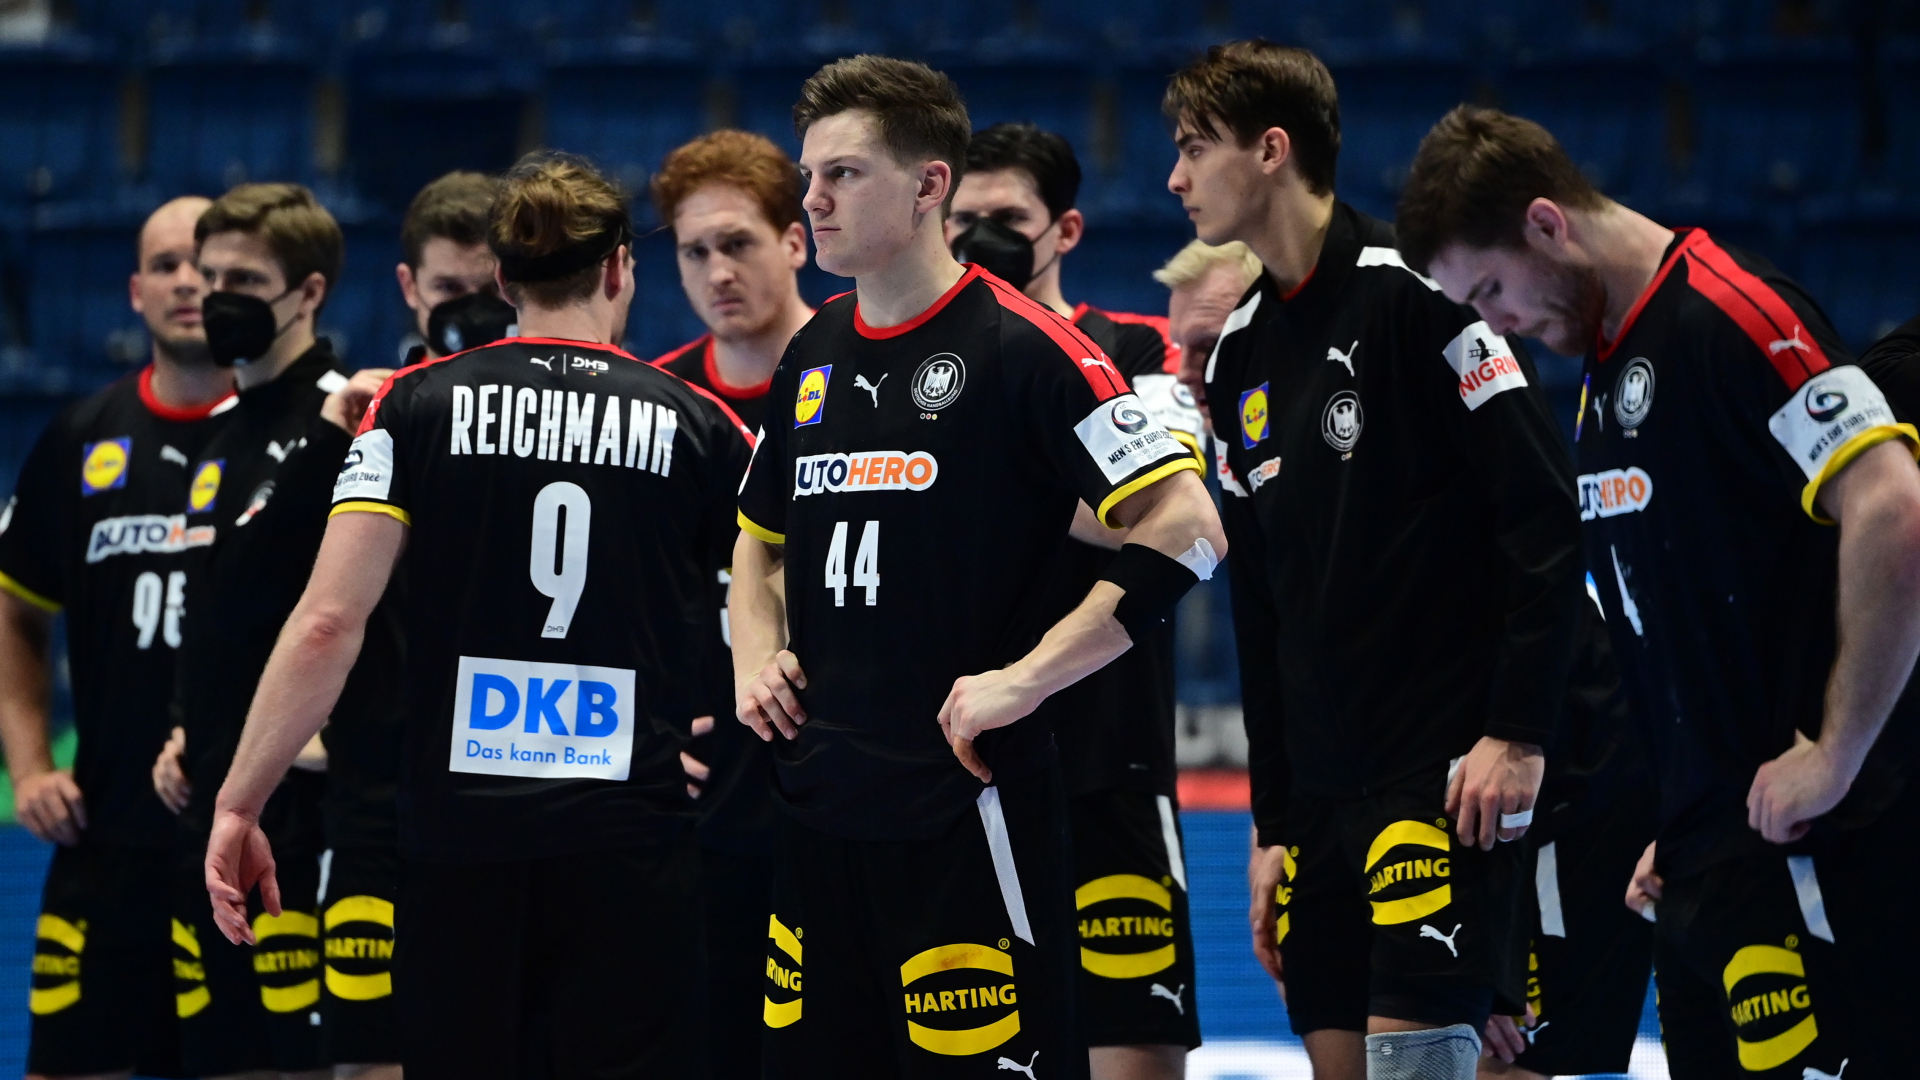 Deutschlands Team um Tobias Reichmann und Christoph Steinert (44) steht bei der Handball-WM nach dem Spiel gegen Norwegen auf dem Platz. | dpa